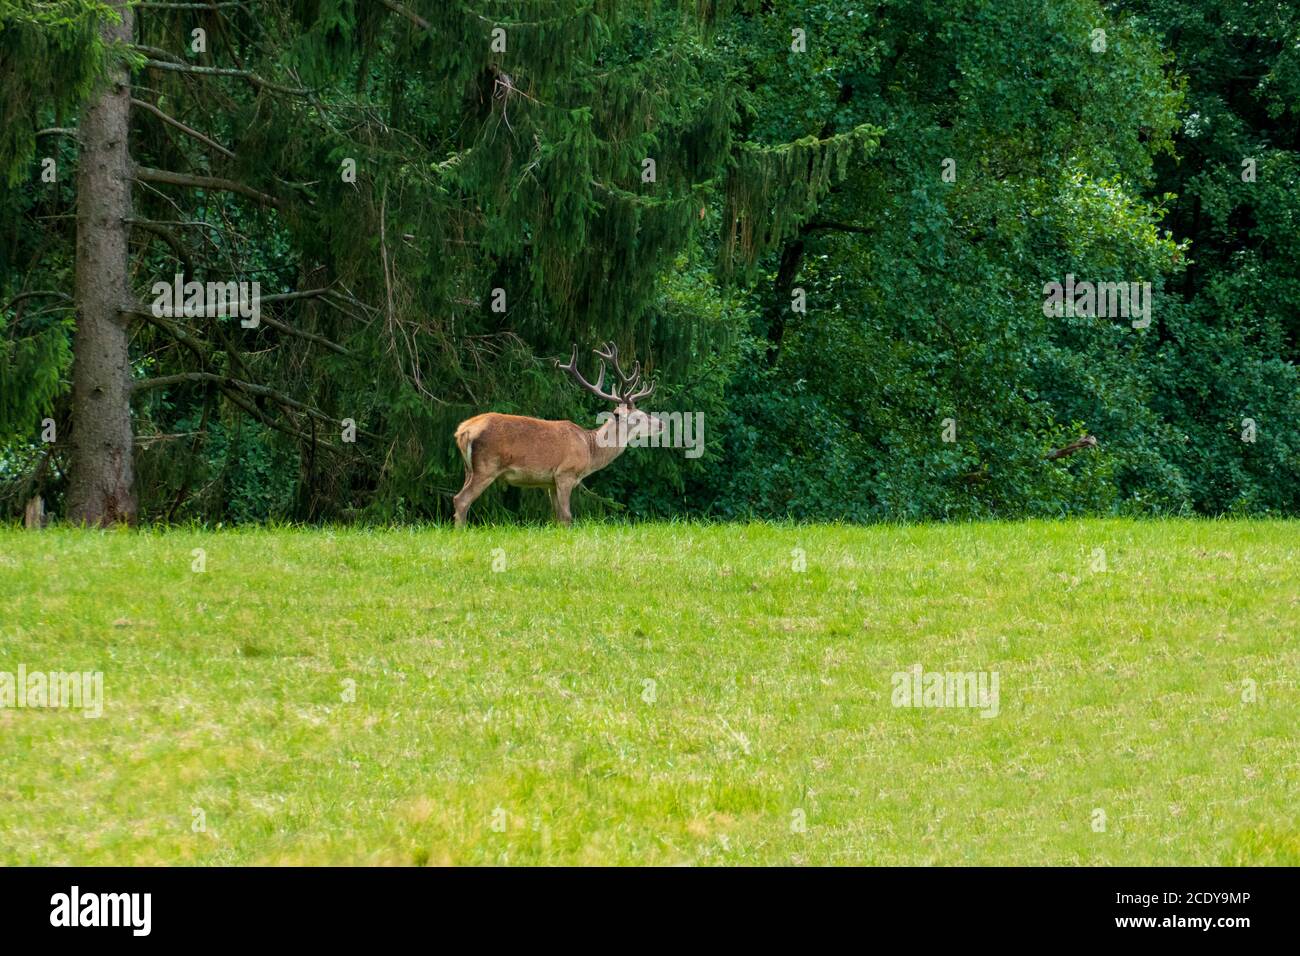 Hirsch auf einer Lichtung im Wald frisst Gras Stock Photo